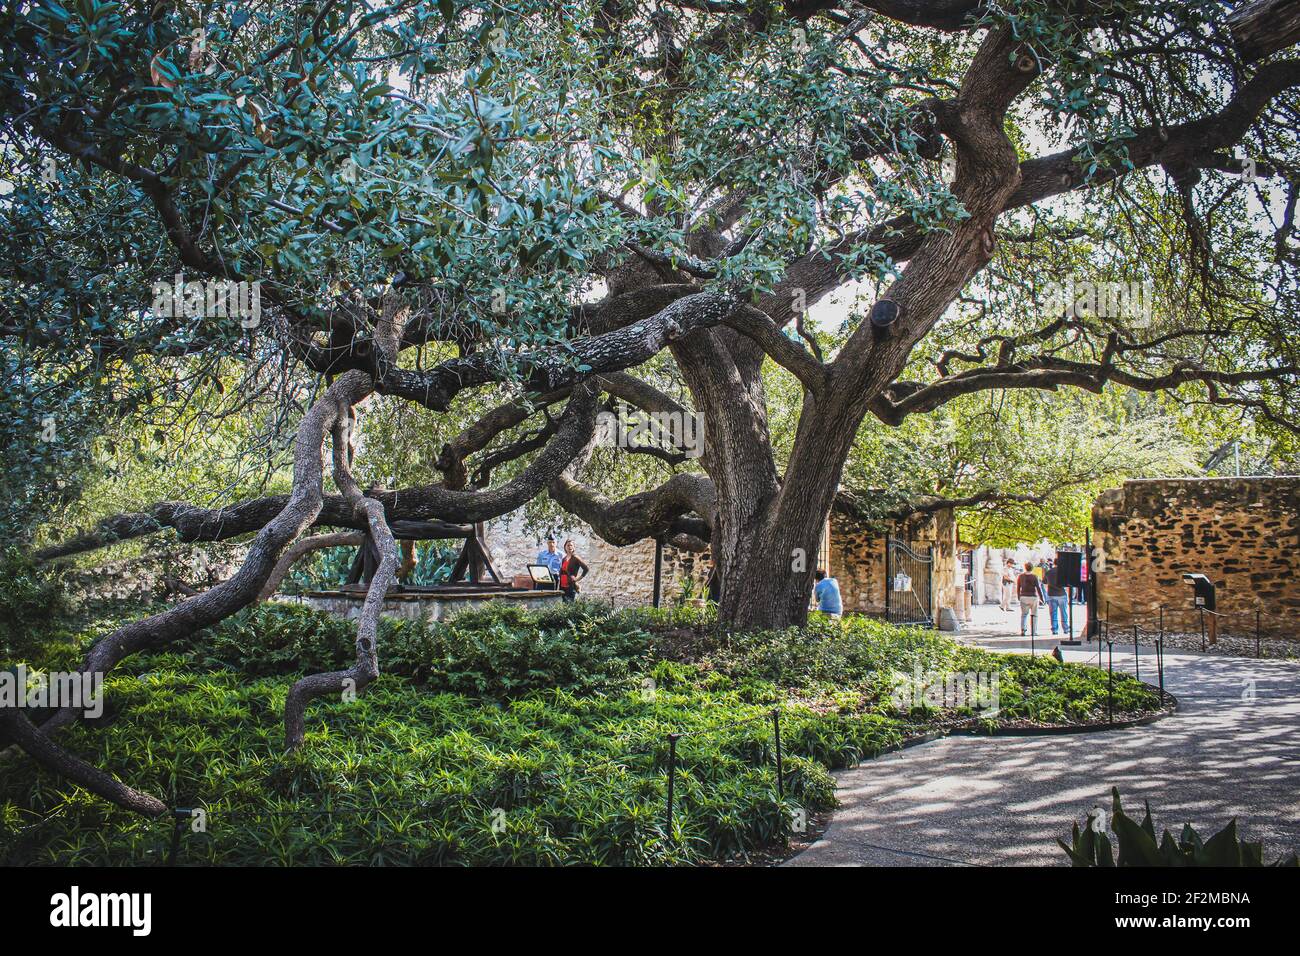 10-18-2012 San Antonio Tx USA - Giant Live Oak Tree Vicino ad Alamo con rami che si allungano e si stendono a terra con i turisti che lo guardano e camminano Foto Stock